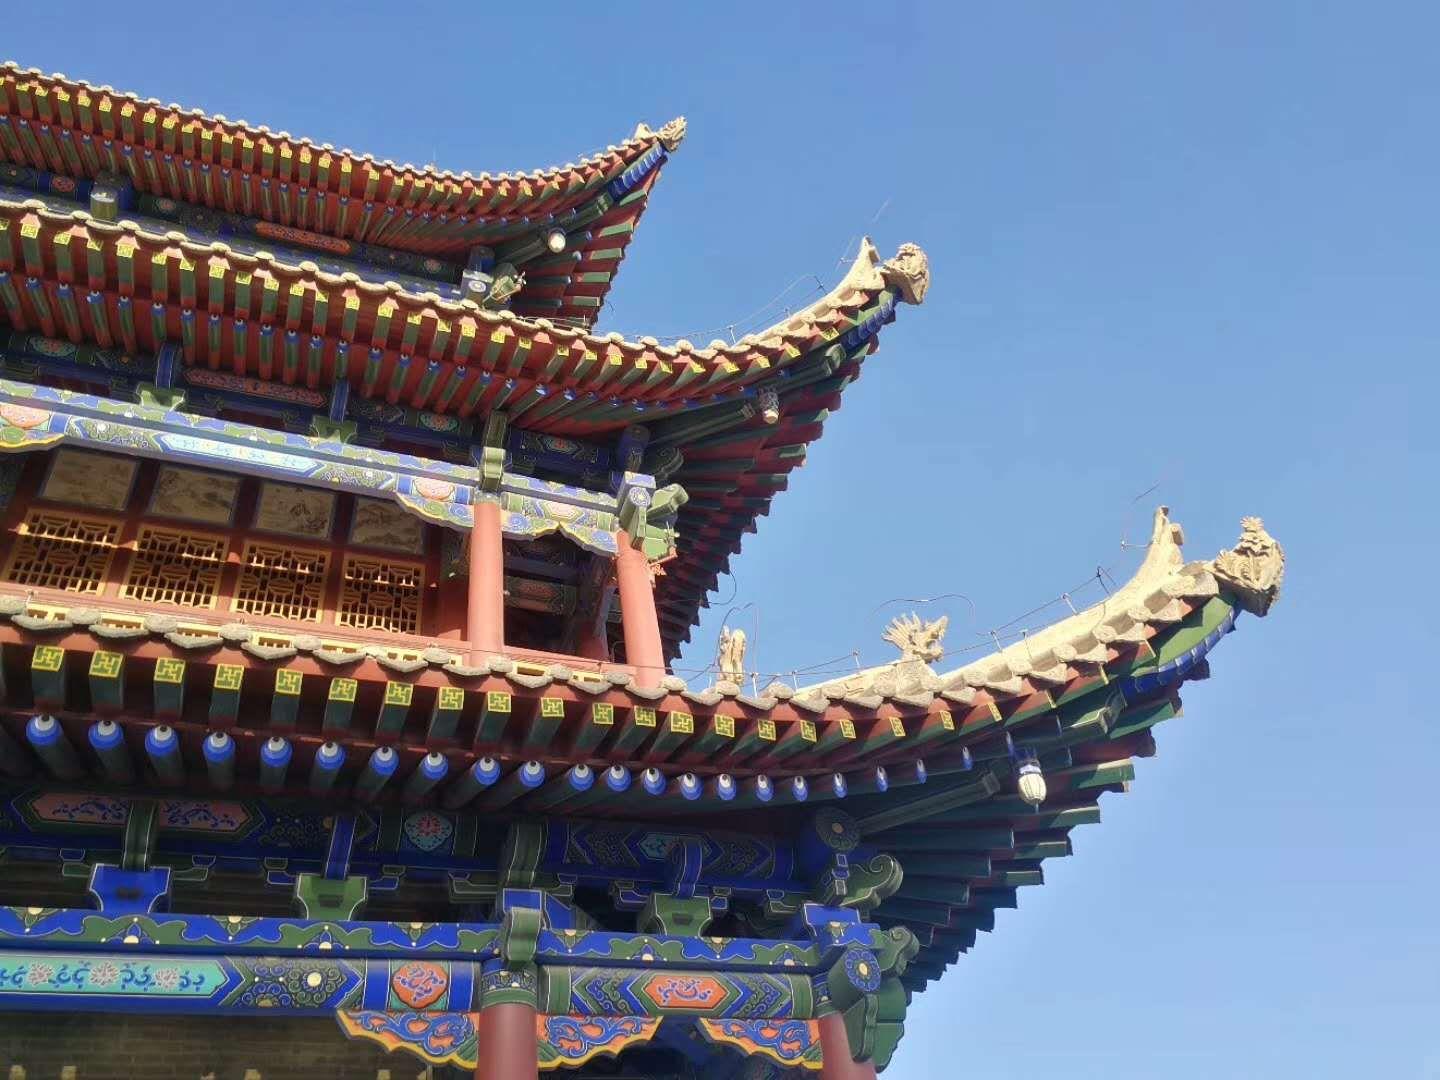 锦州，南临渤海，北依松岭，位于辽西走廊东端，是连接中国东北与华北的交通枢纽和咽喉要道。锦州，拥有2100年历史，素有“锦绣之州”的美誉。